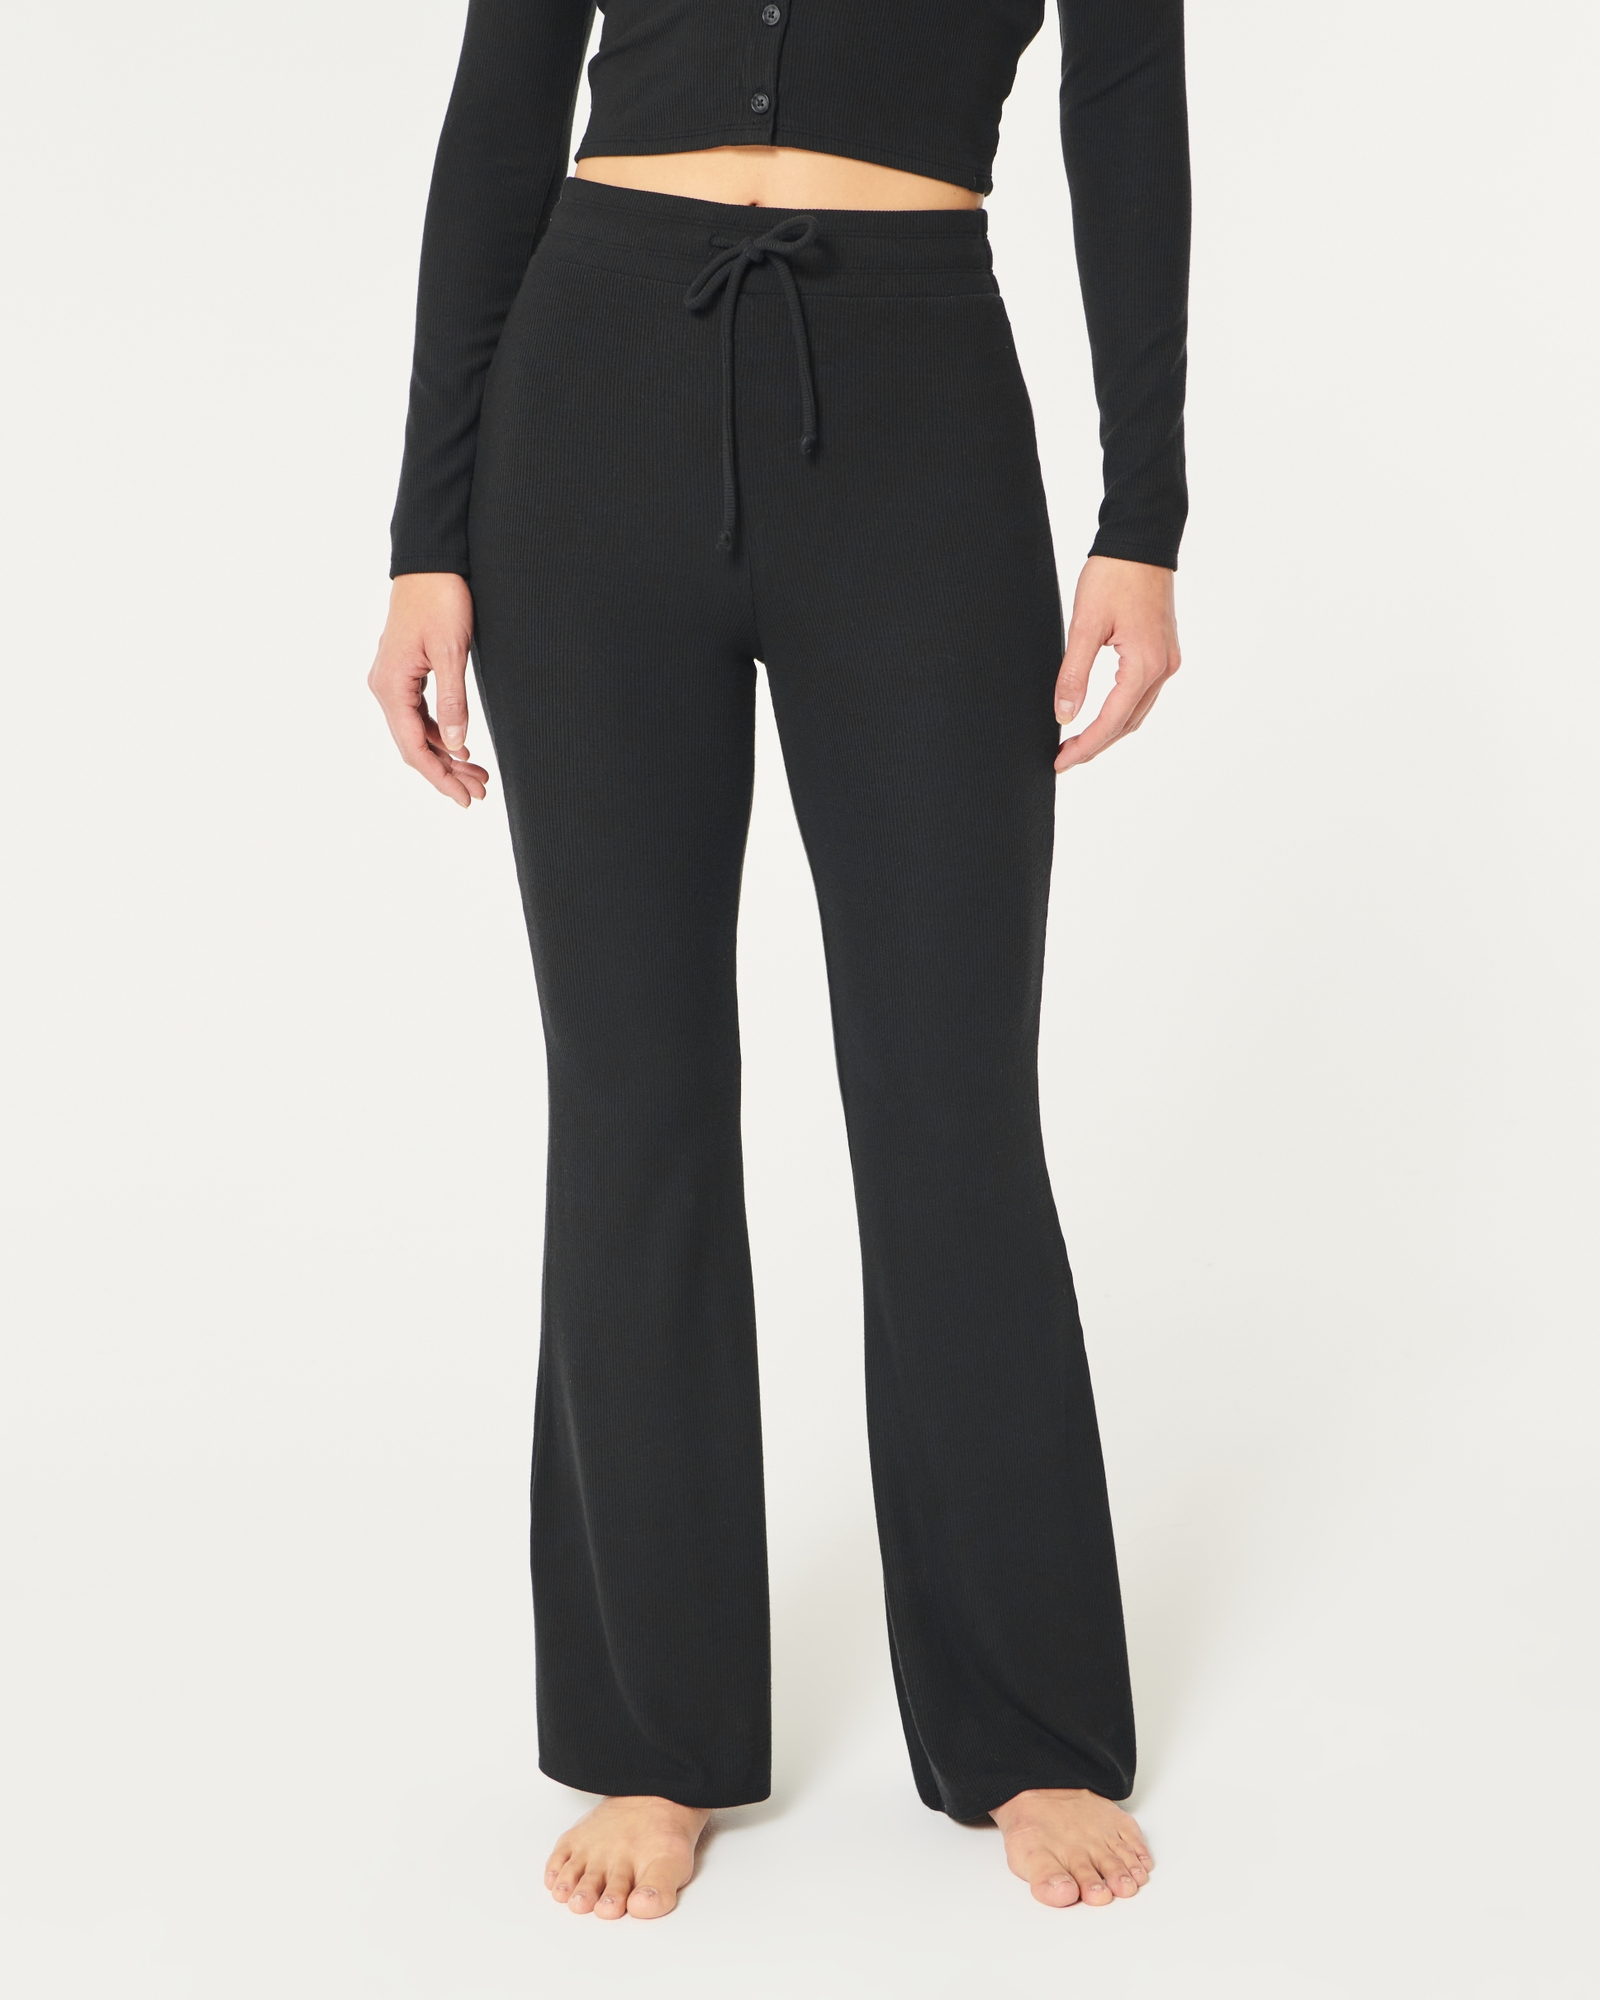 | Sleepwear Women\'s Pants Jersey & Flare Gilly Loungewear Hicks Rib Women\'s